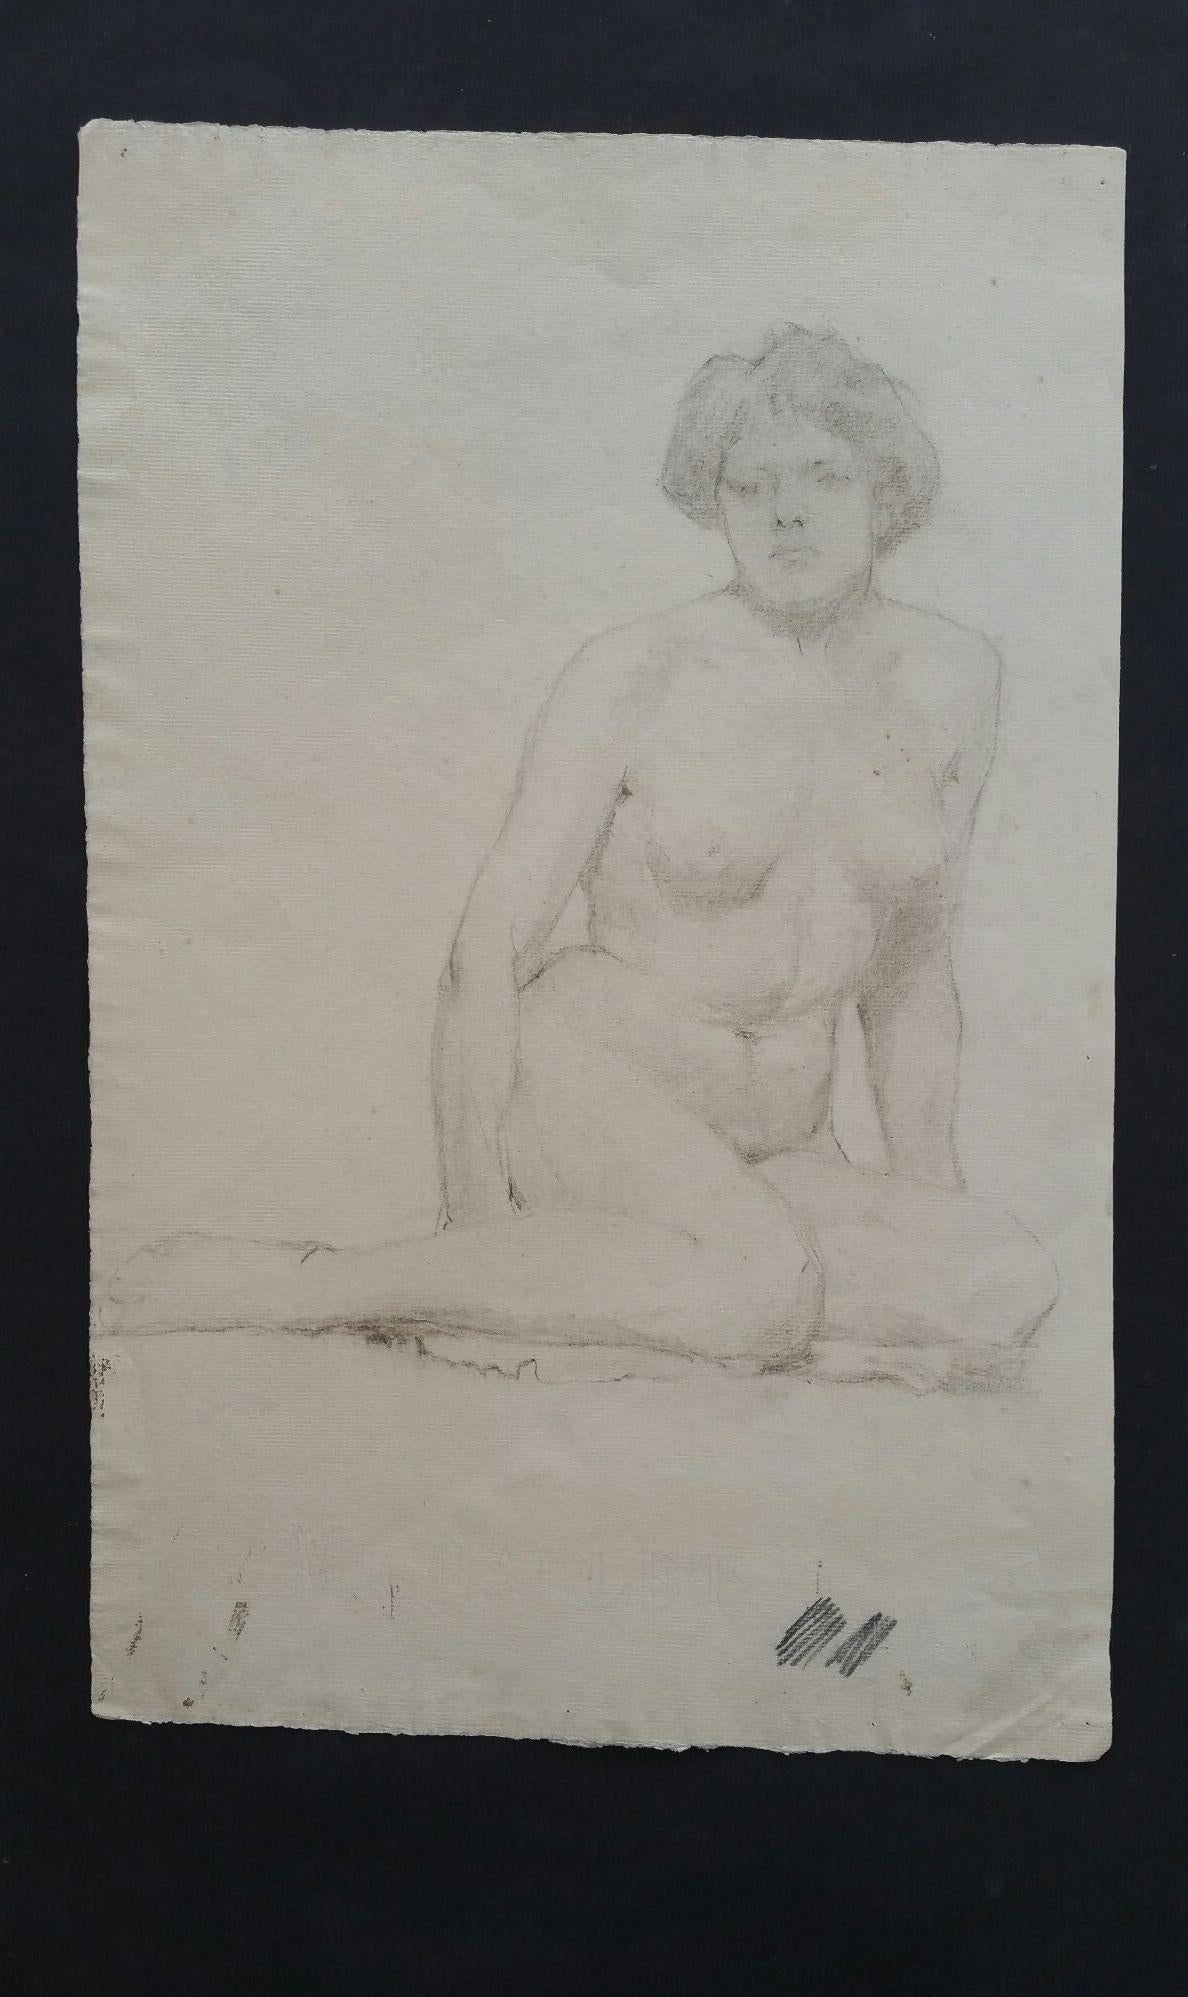 Esquisse à la mine de plomb d'une femme nue, assise sur le sol
par Henry George Moon (britannique, 1857-1905)
sur papier d'artiste blanc cassé, non encadré
mesures : feuille 18.75 x 12 pouces 

provenance : de la succession de